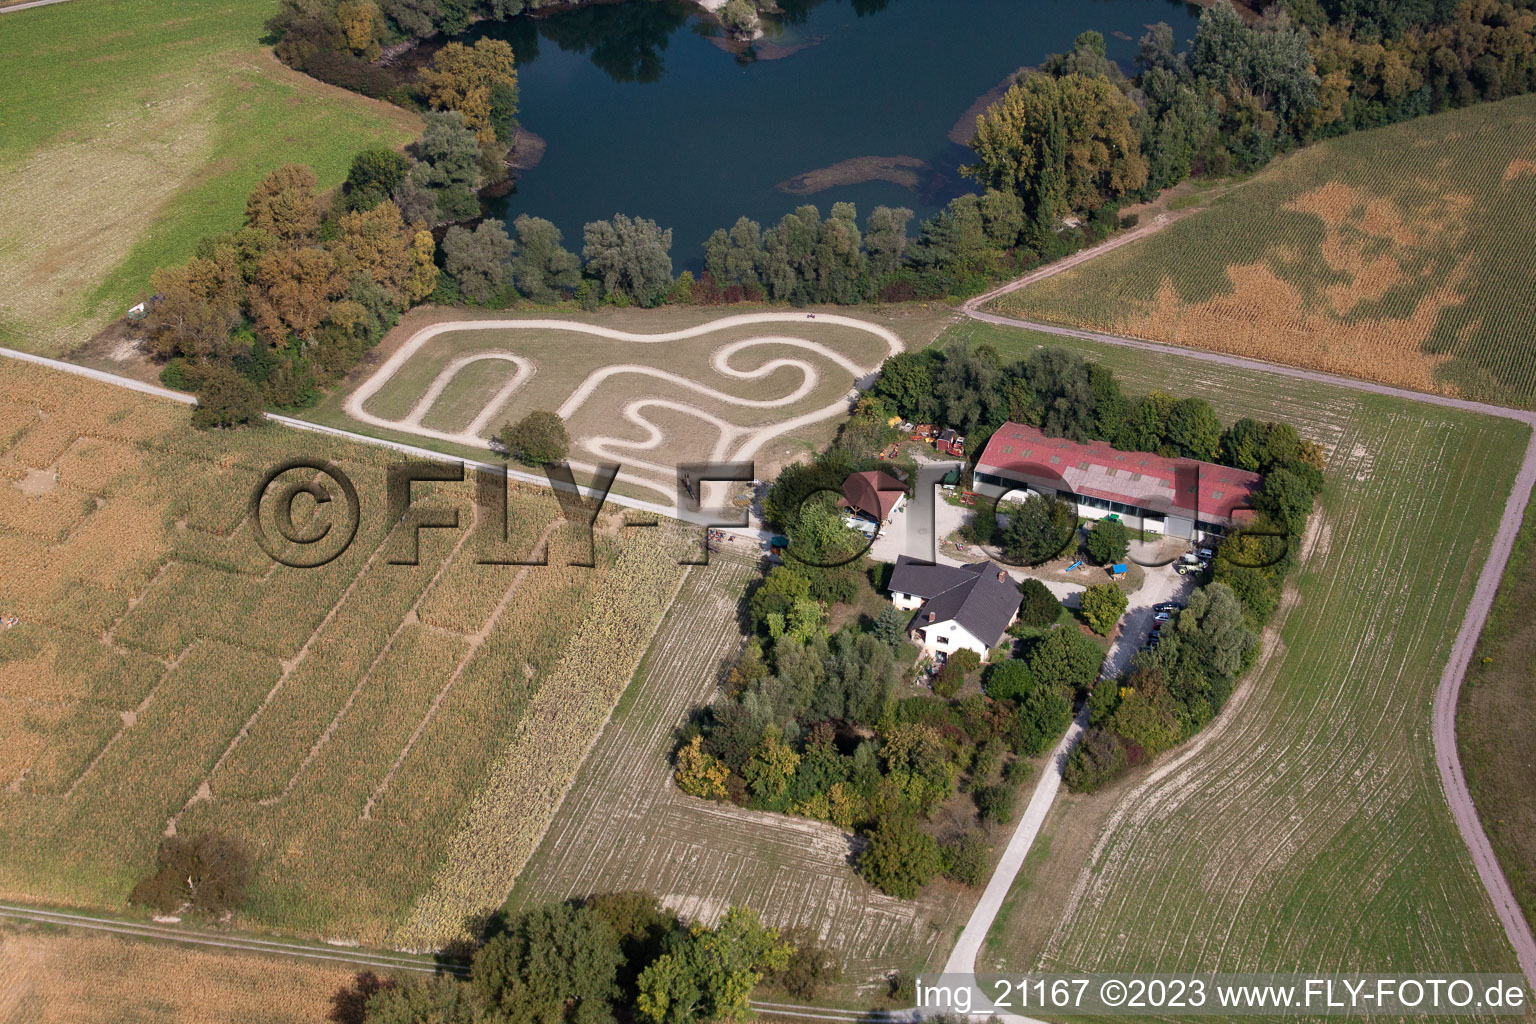 Leimersheim im Bundesland Rheinland-Pfalz, Deutschland von der Drohne aus gesehen